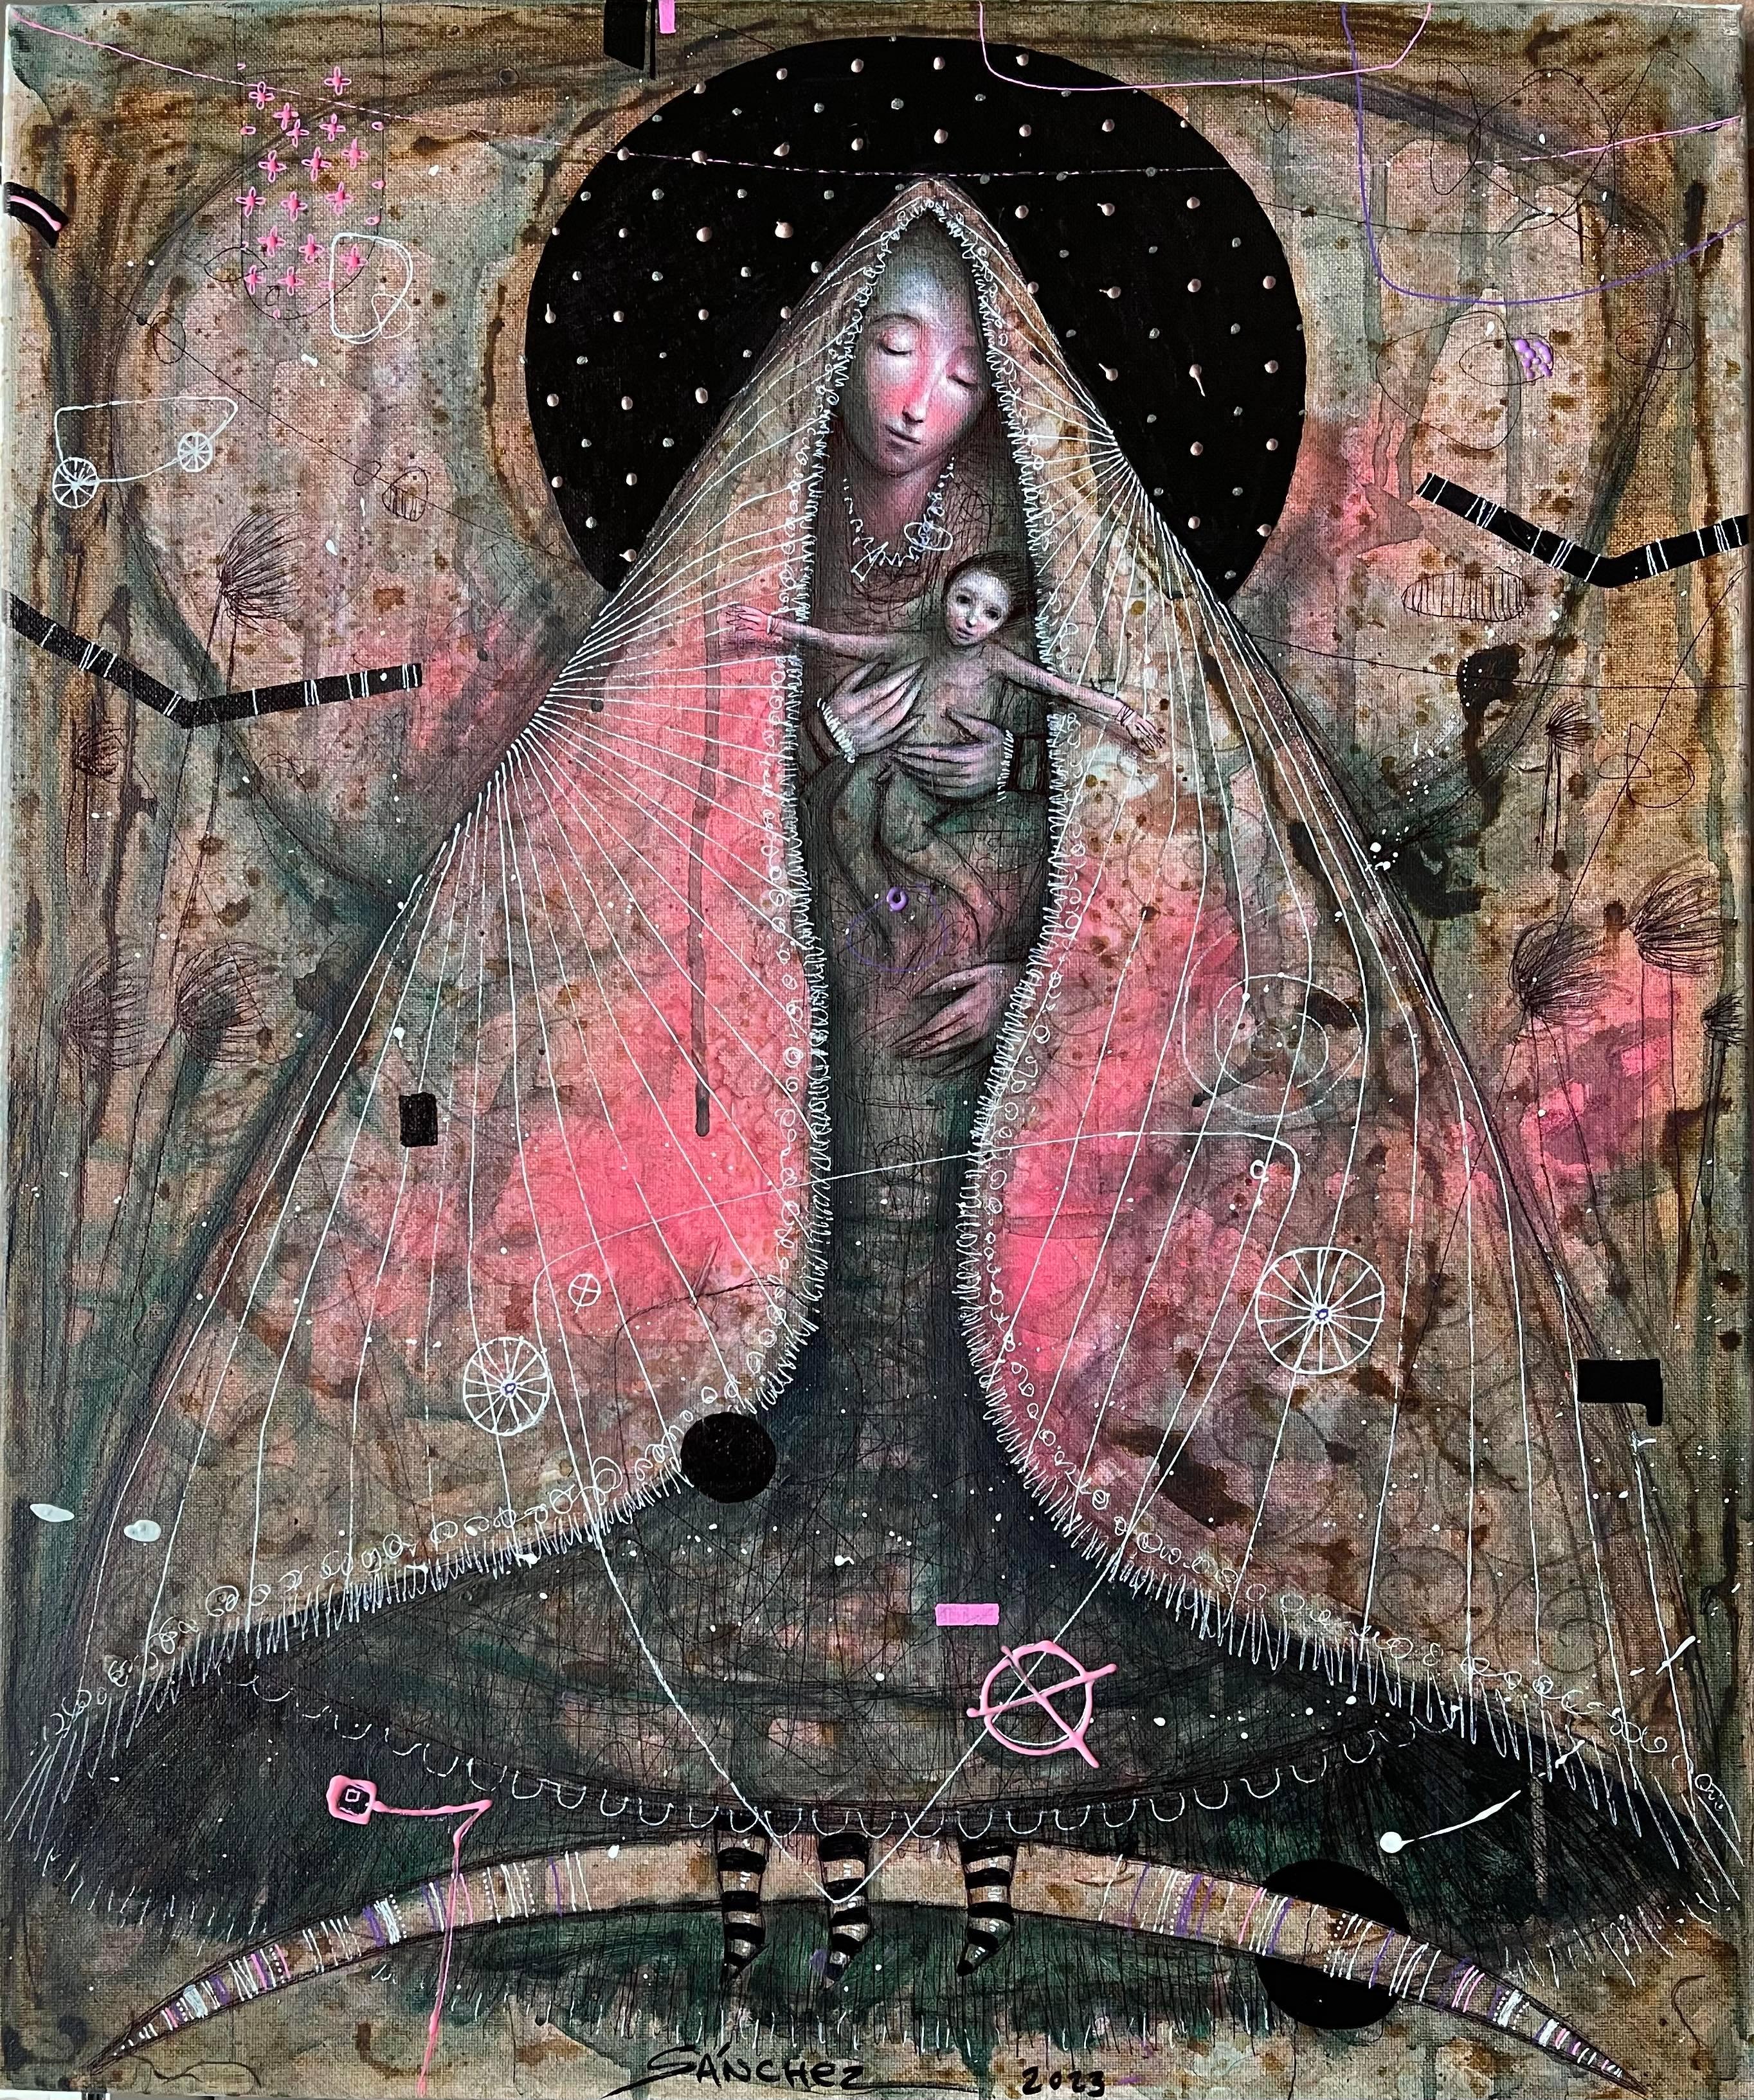 The Virgen & die mechanische Creed, Öl, Mixed Media, Hyperrealismus,  Kubanische Kunst, 